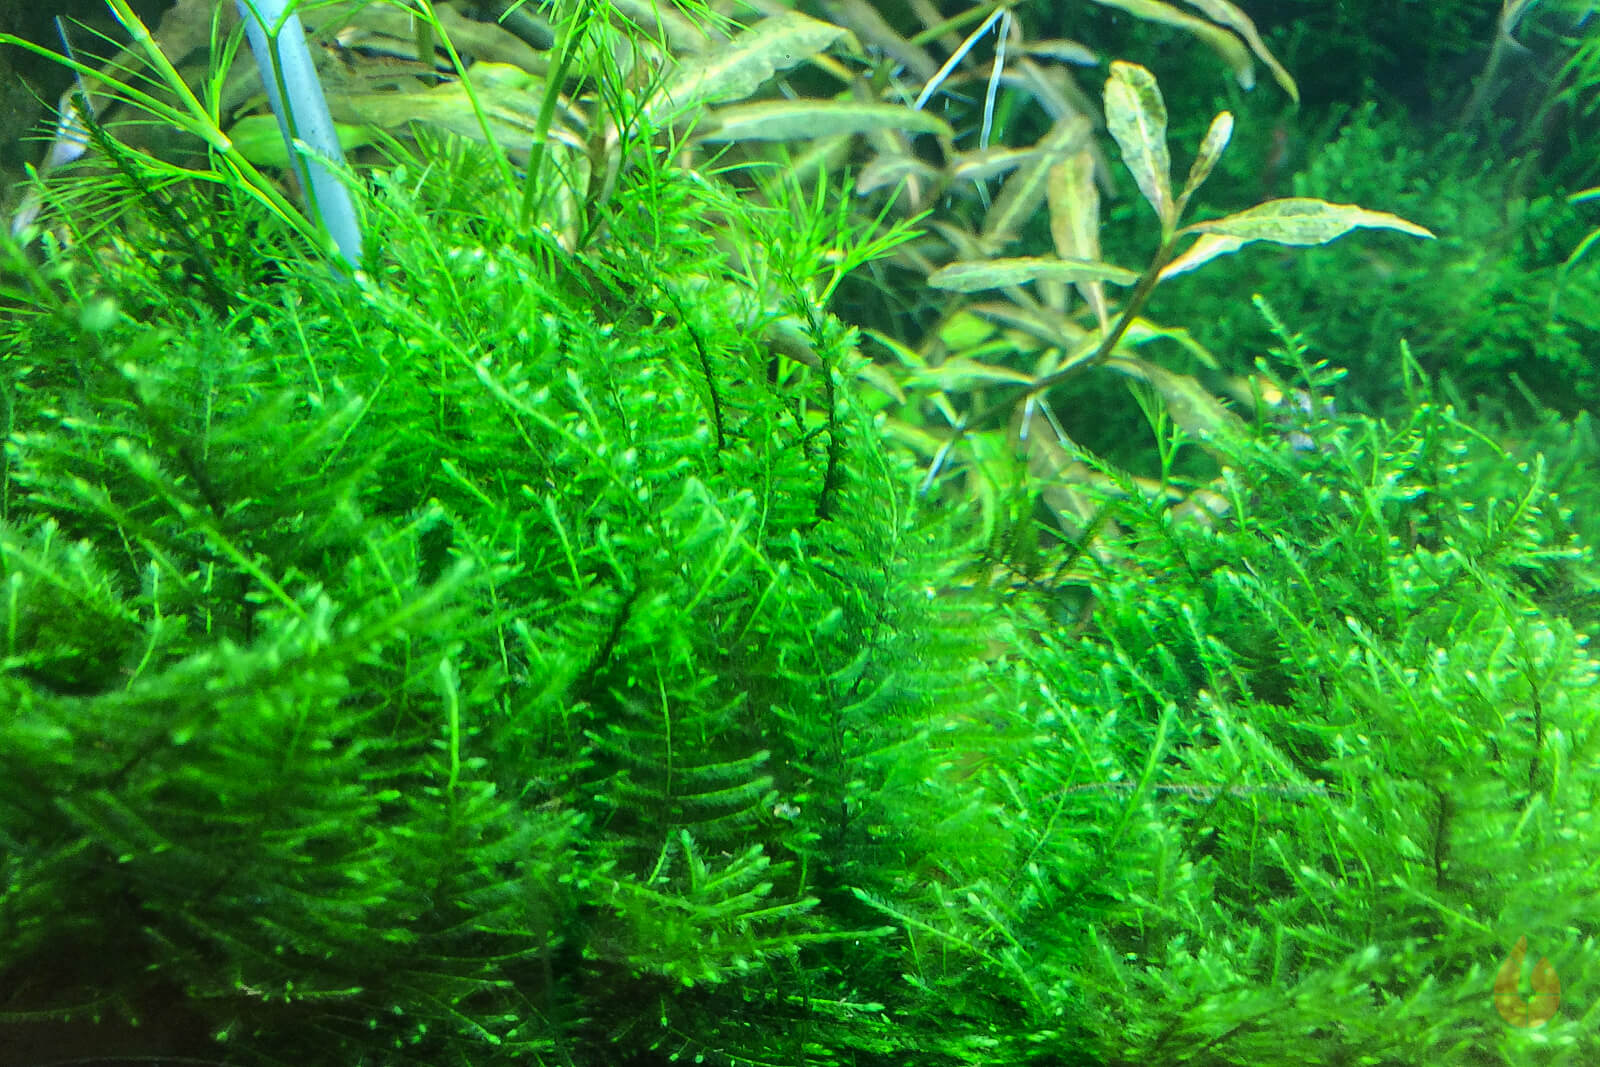 Taiwan Moos | Taxiphyllum alternans 'Taiwan Moss' | In Vitro Aquariummoos im Aquarium